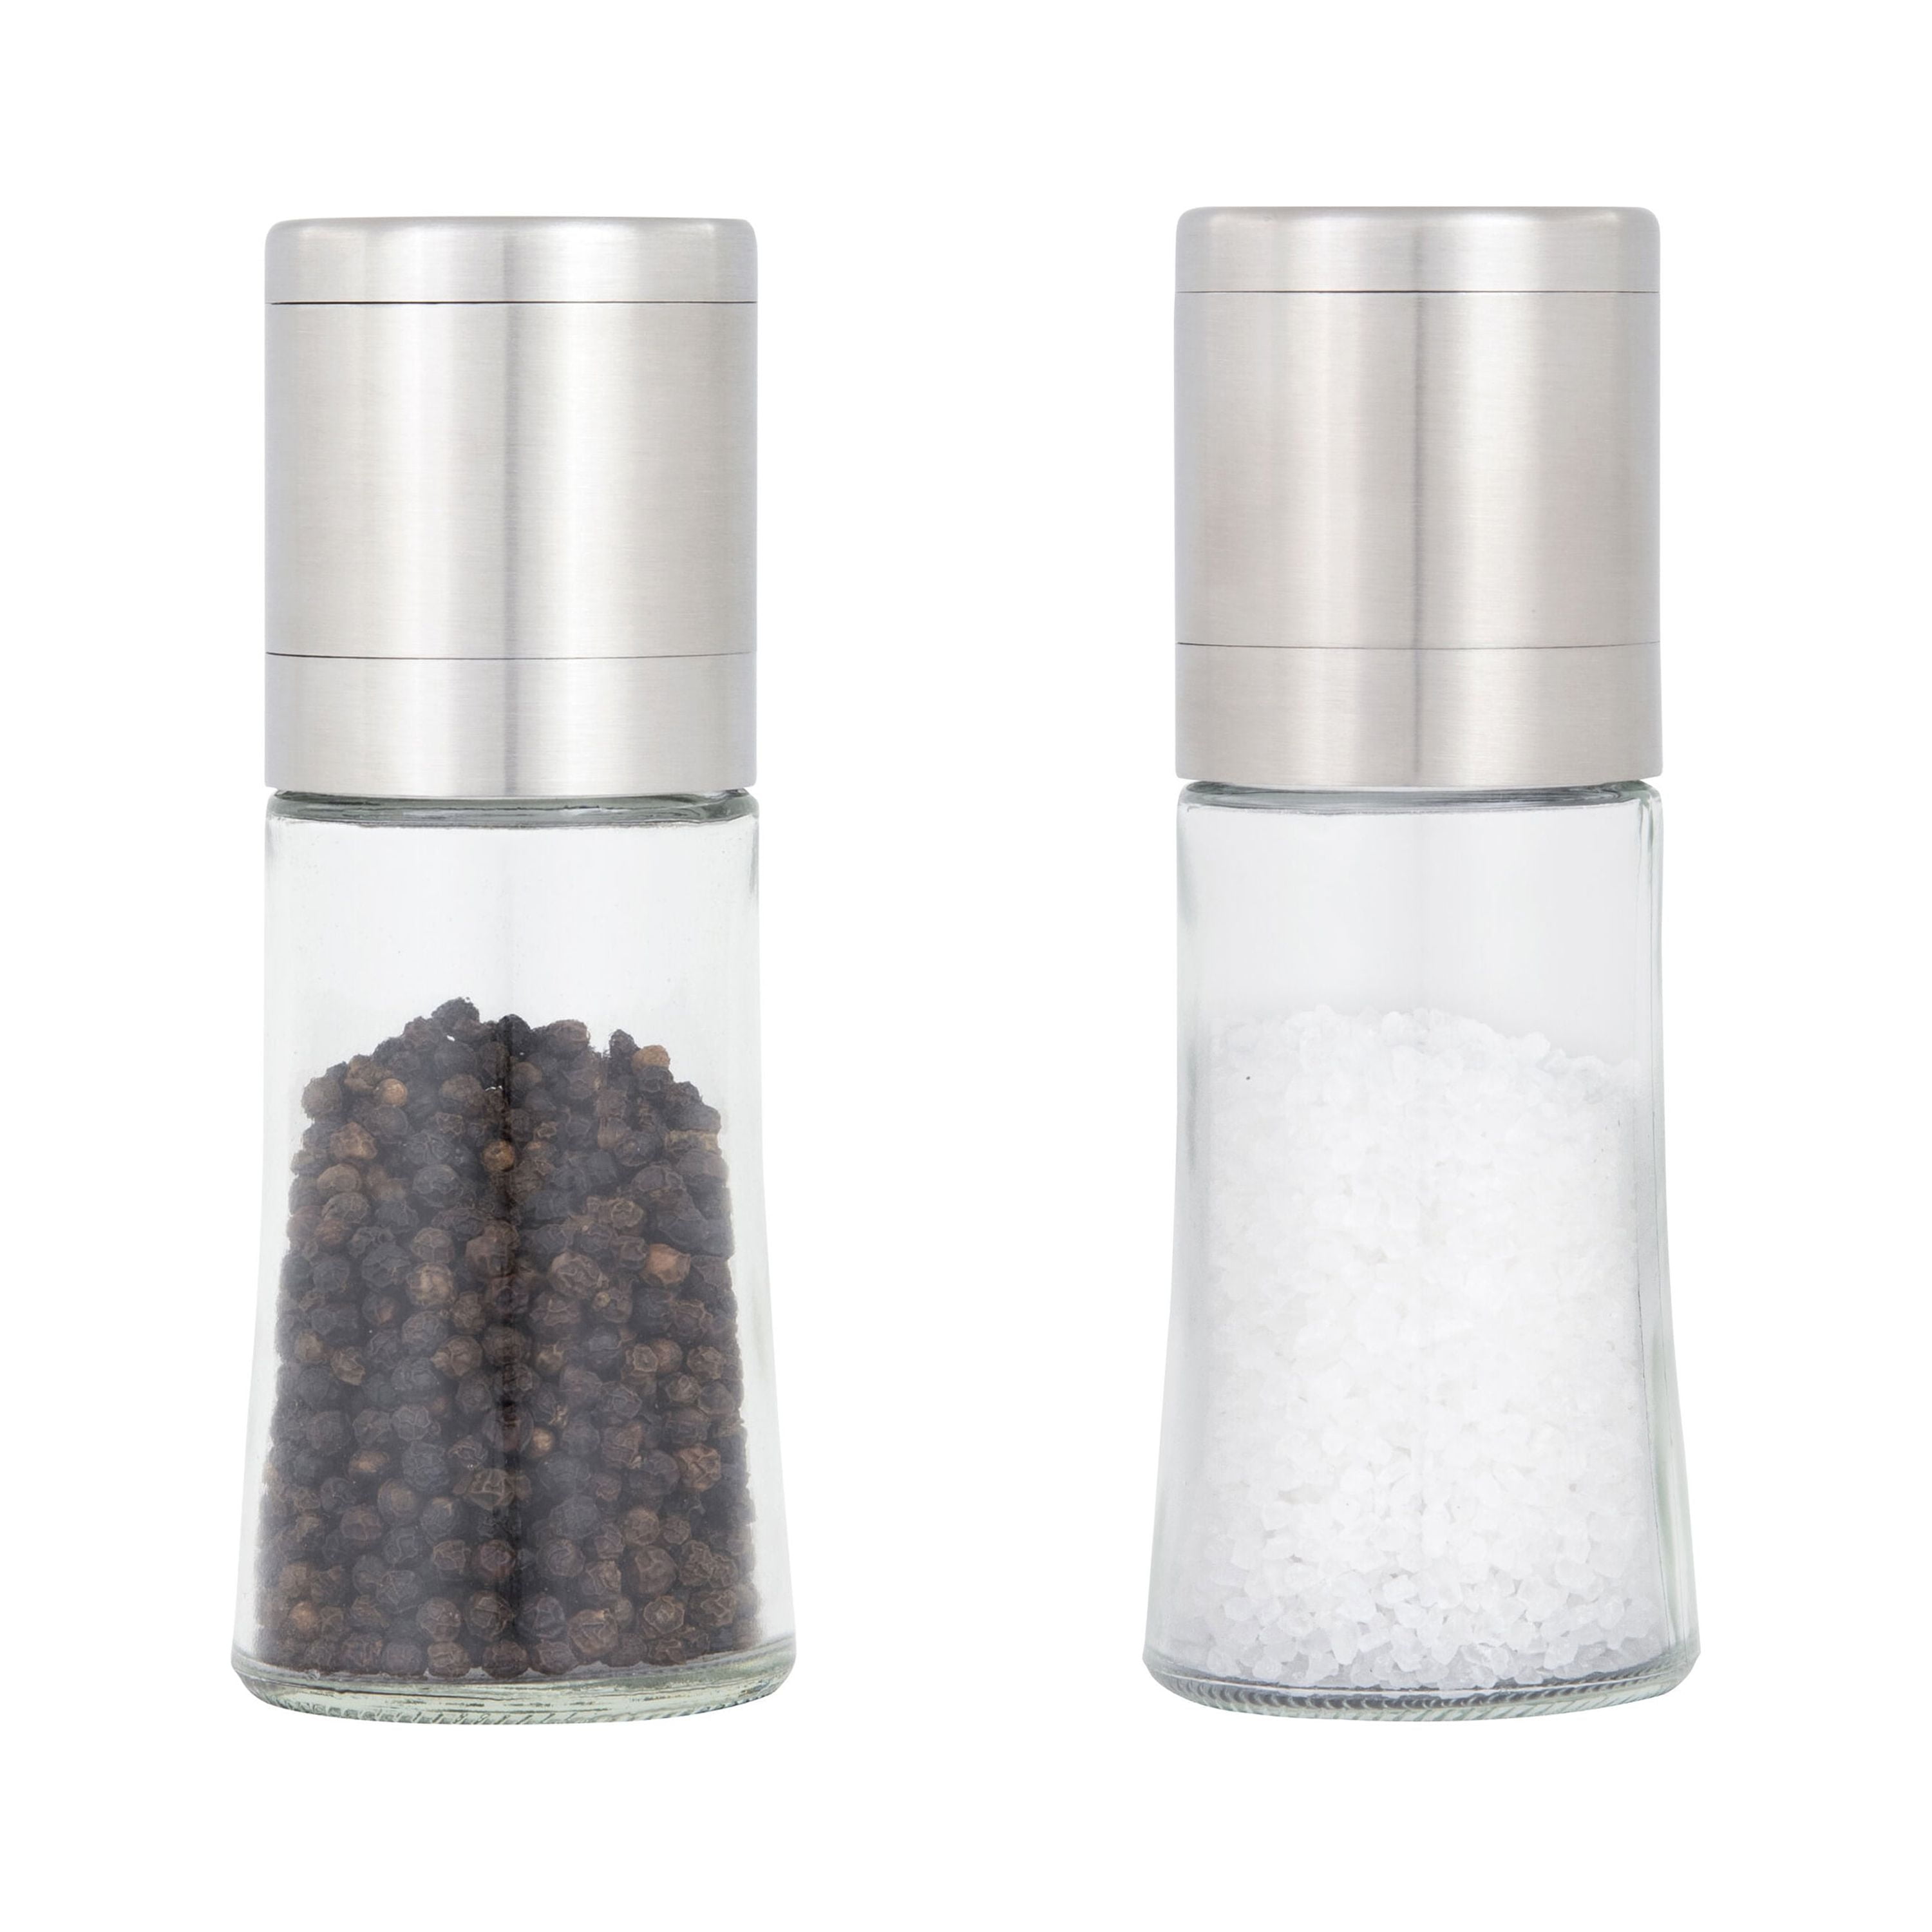 Disposable Black Pepper Grinder & House Pepper Blend Grinder Set